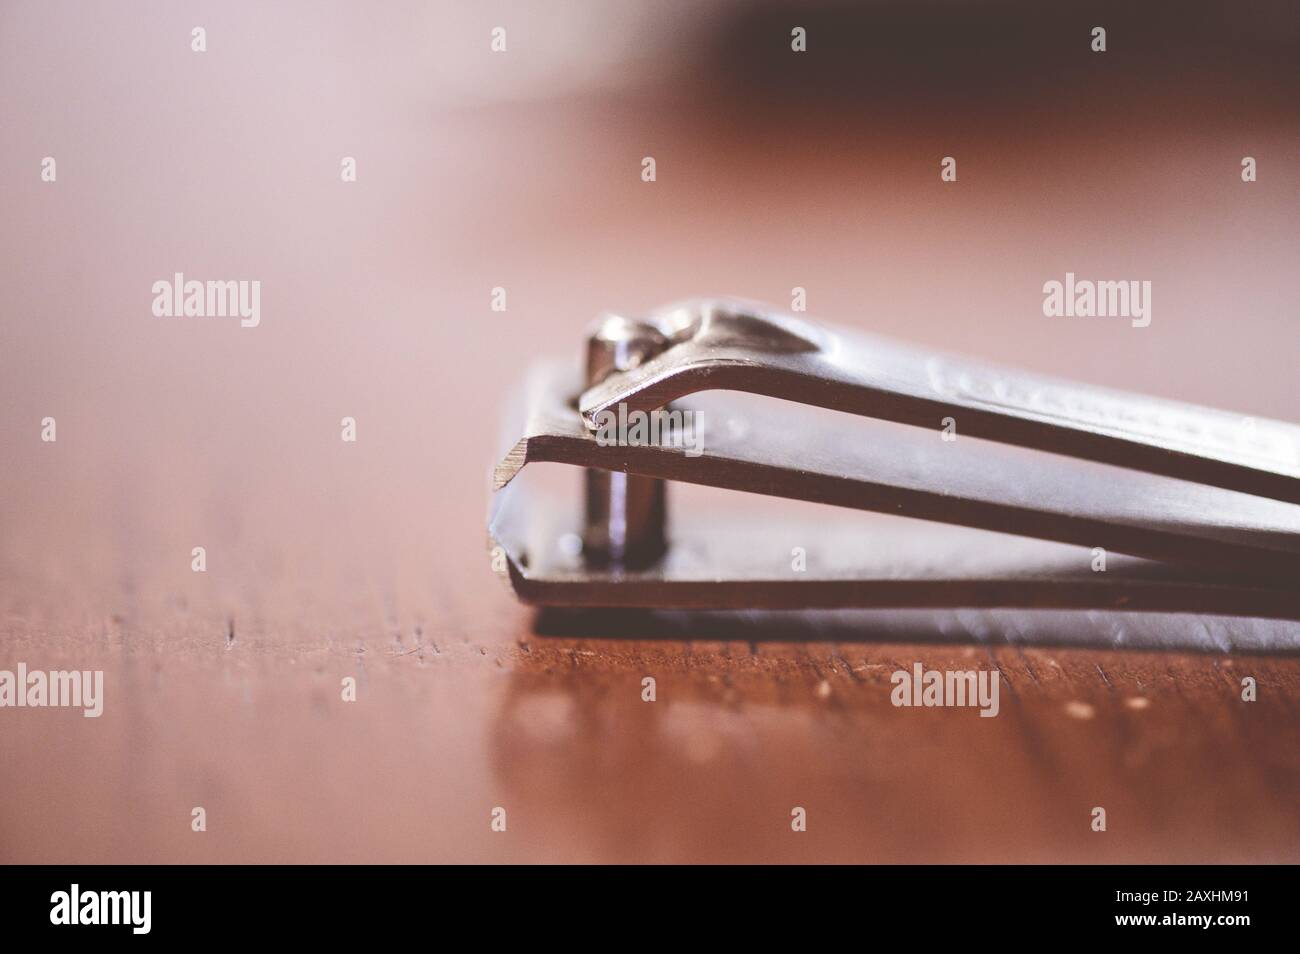 Nahaufnahme eines Nagelschneiders auf einer hölzernen Oberfläche Mit unscharfem Hintergrund Stockfoto